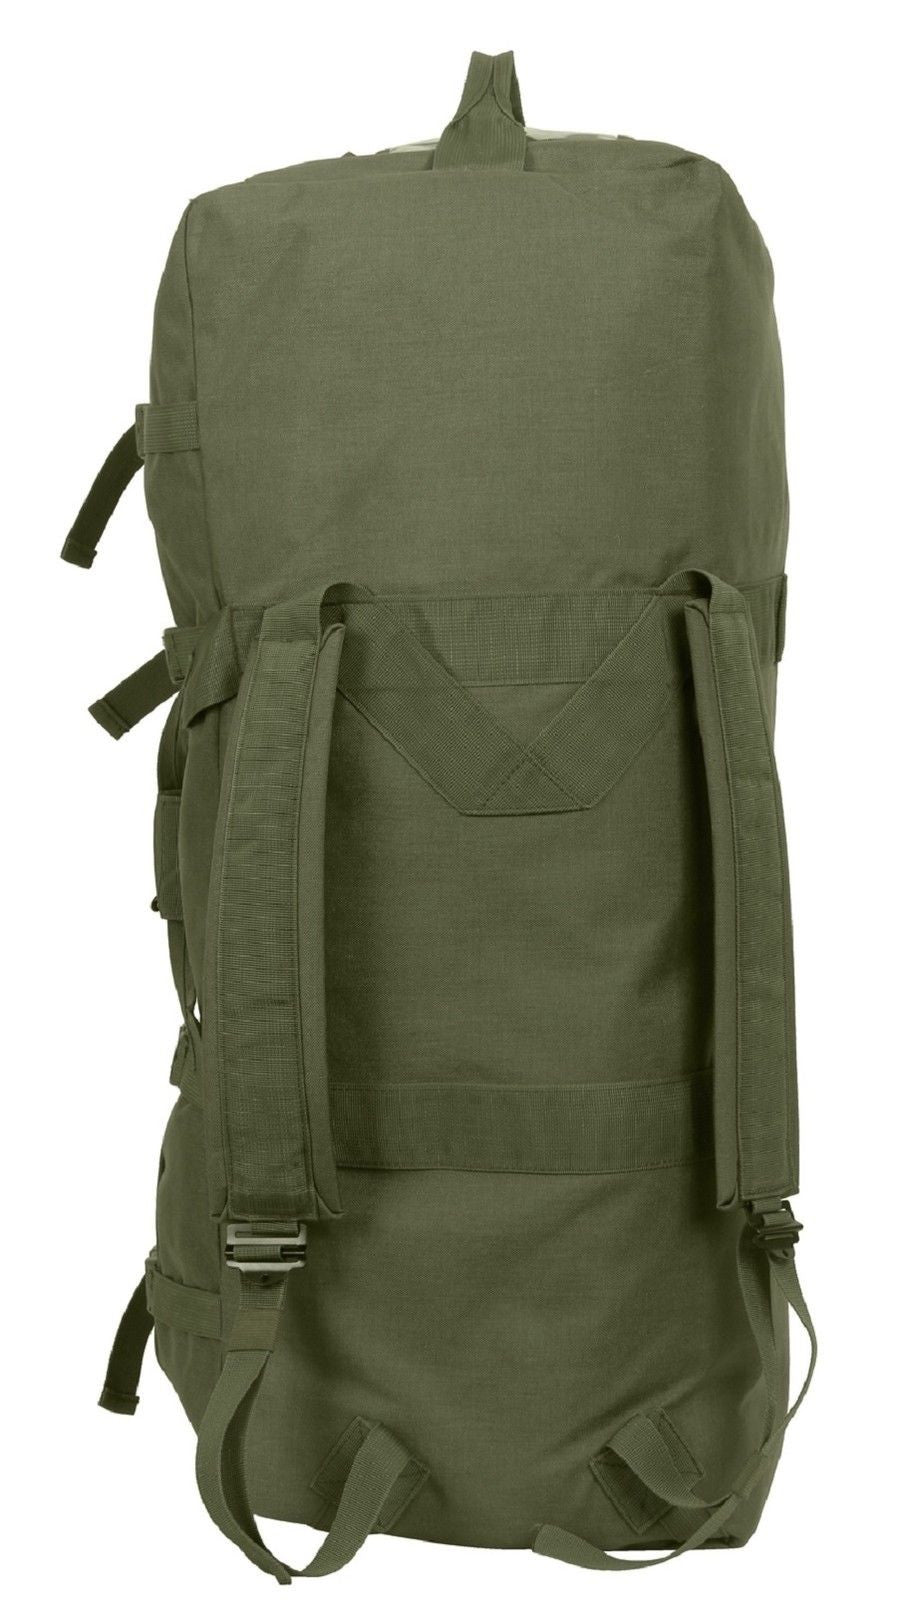 Large 32" Enhanced Nylon Duffle Bag - Rothco Olive Drab Green GI Type Gear Bag